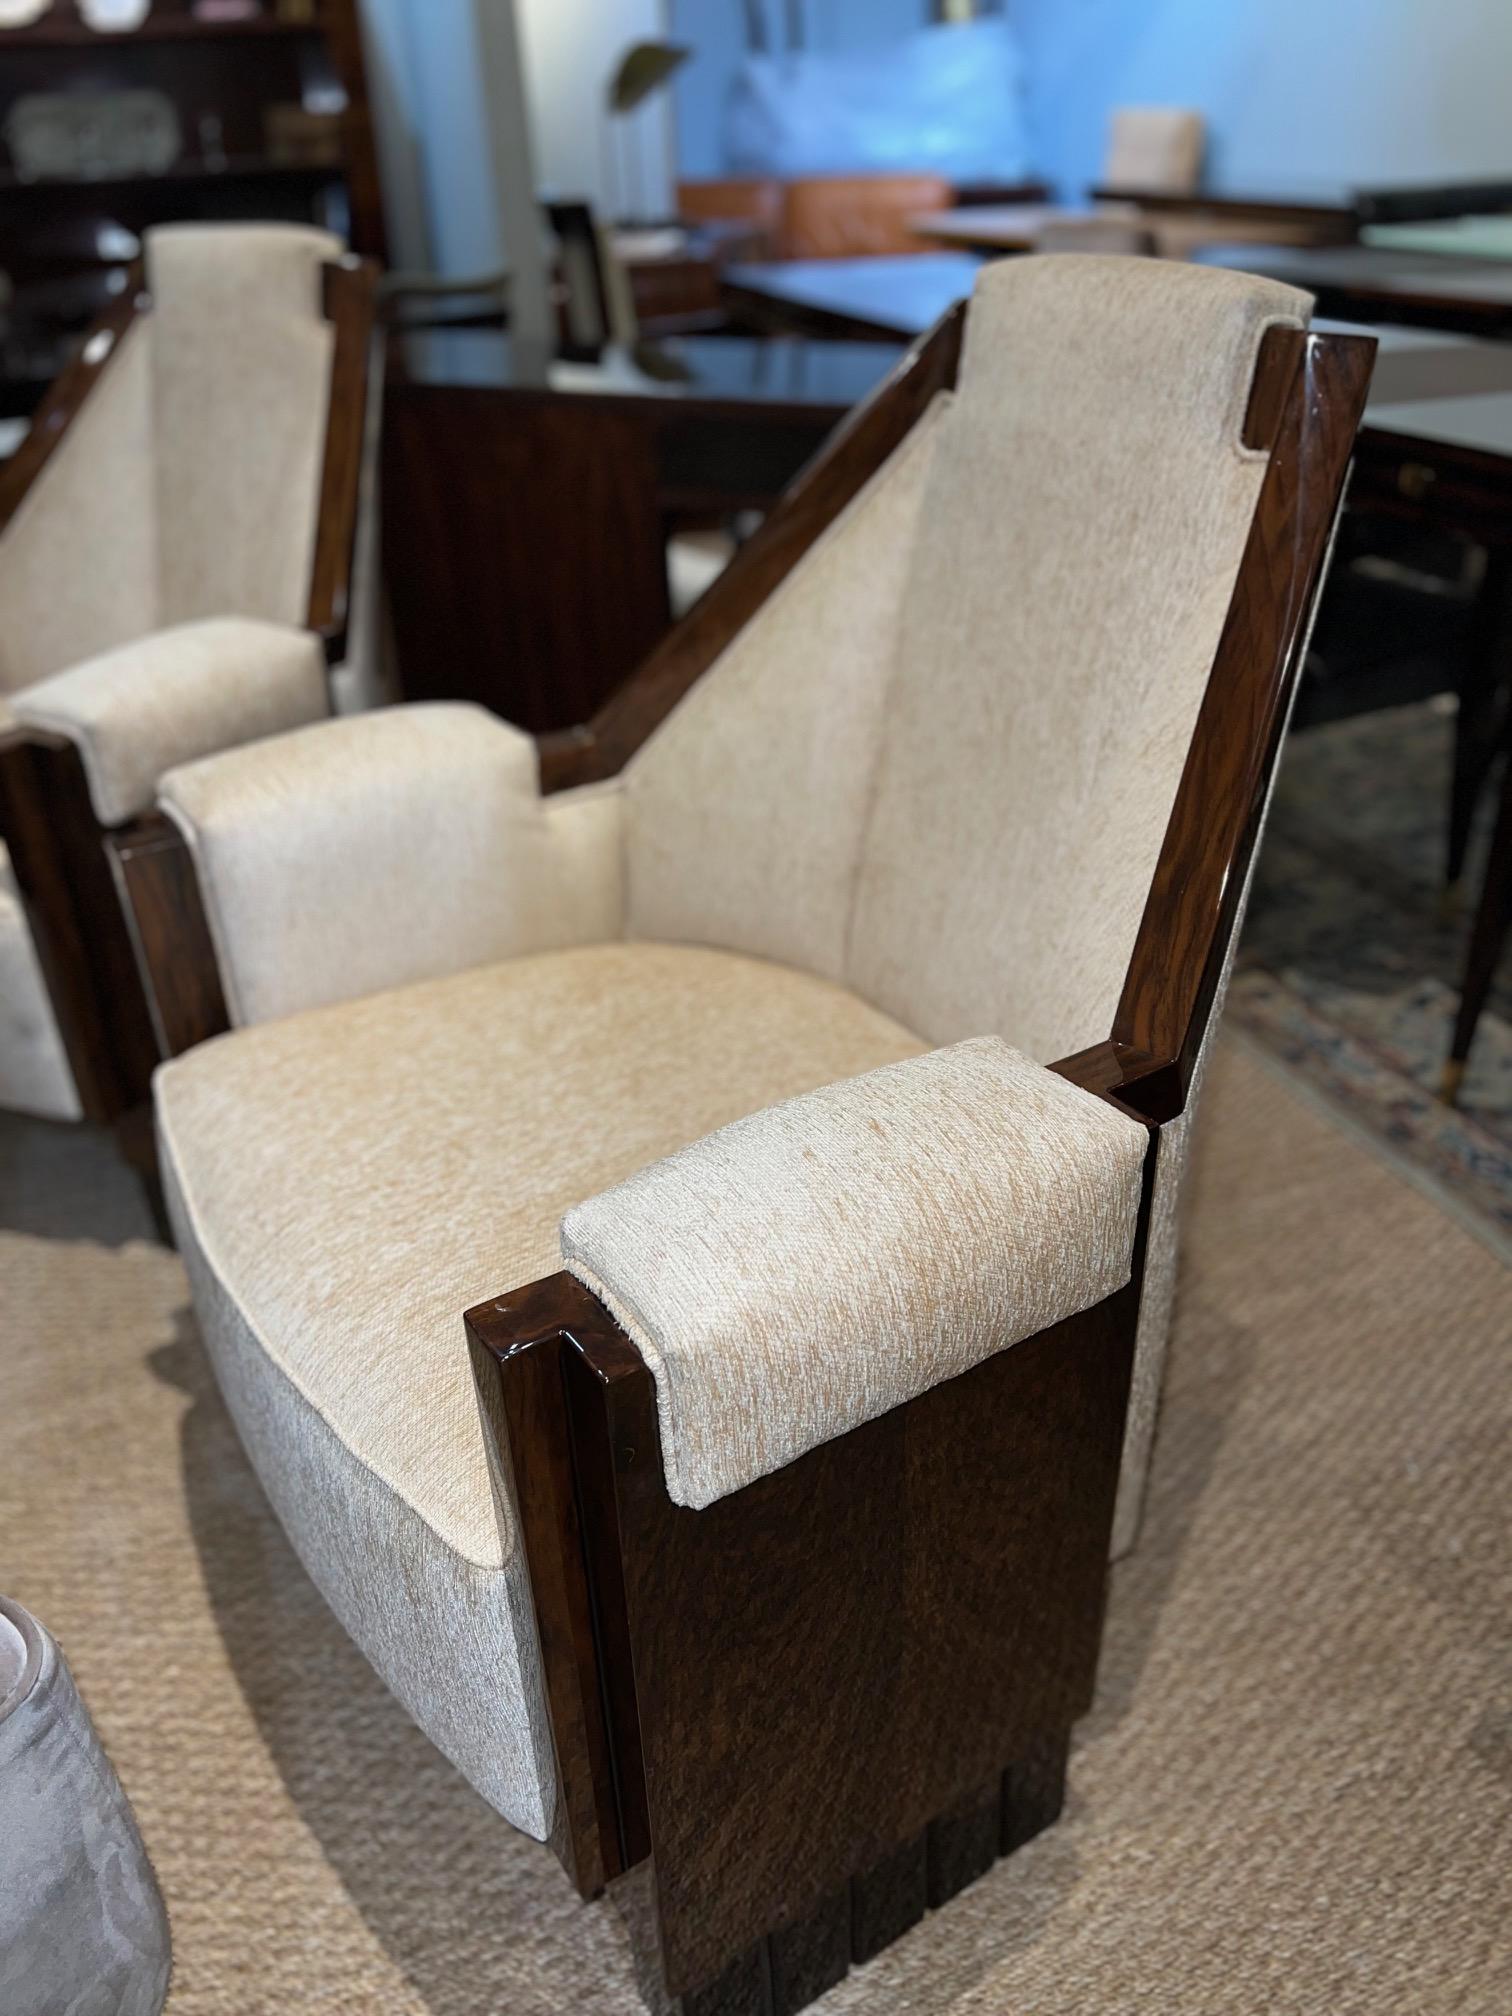 Ein Paar einzigartiger Stühle aus Walnussholz, neu gepolstert mit hellbeigem, samtigem Stoff. Der Stuhl wird durch 3 rechteckige Beine erhöht. Die Rückenlehne jedes Stuhls ist mit einer Holzplatte verziert, die die Schönheit des Holzes zur Geltung